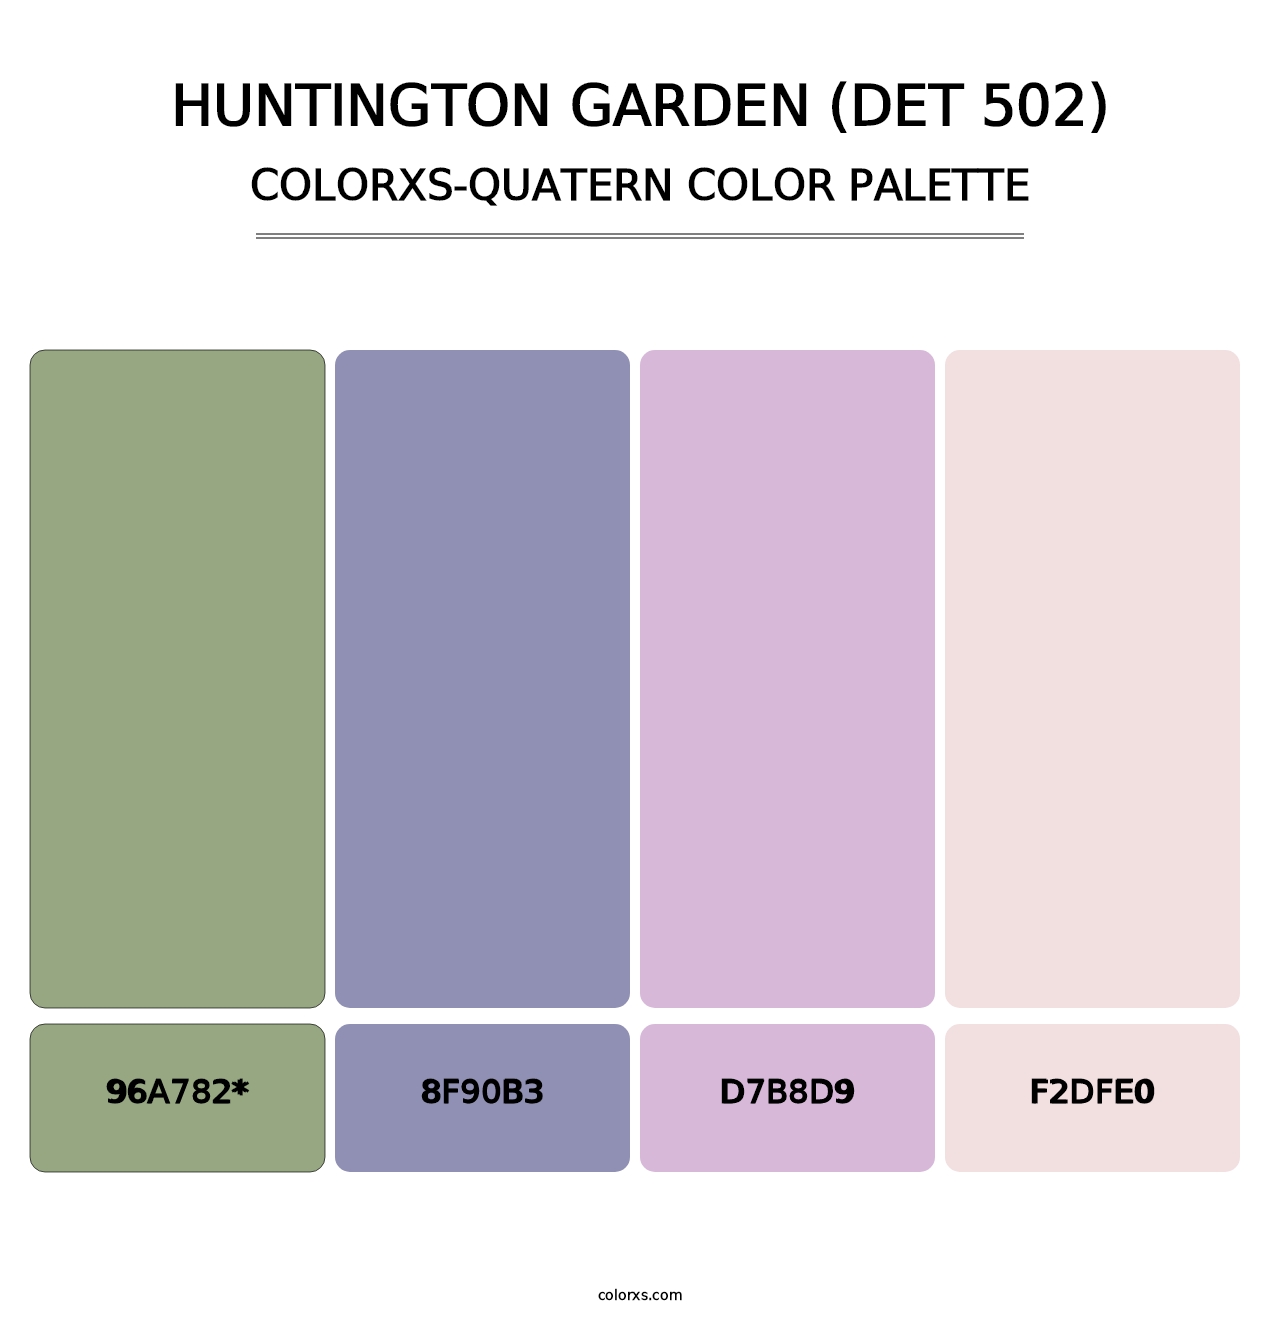 Huntington Garden (DET 502) - Colorxs Quatern Palette